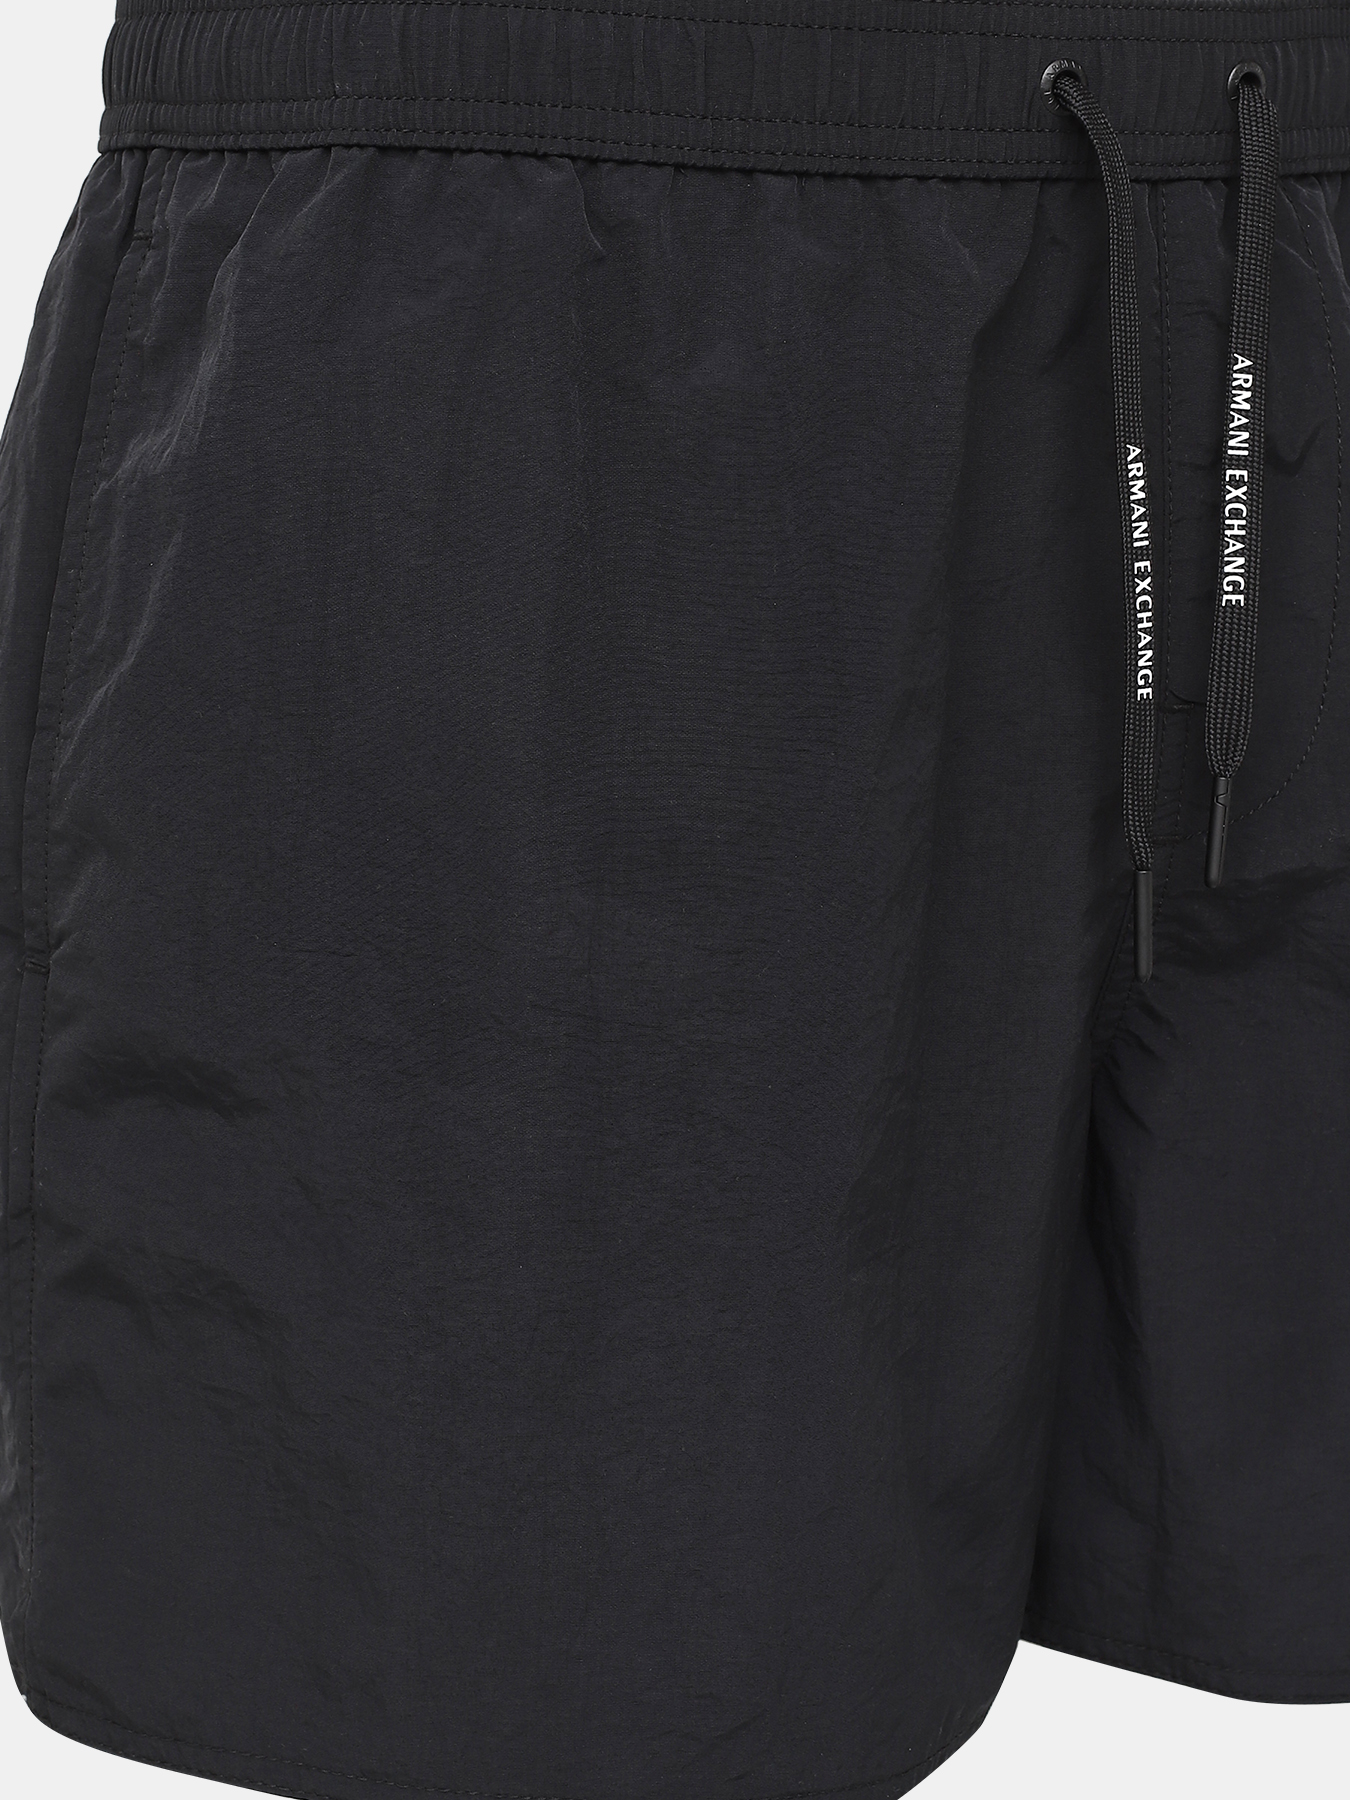 Плавательные шорты Armani Exchange 409337-045, цвет черный, размер 52-54 - фото 4